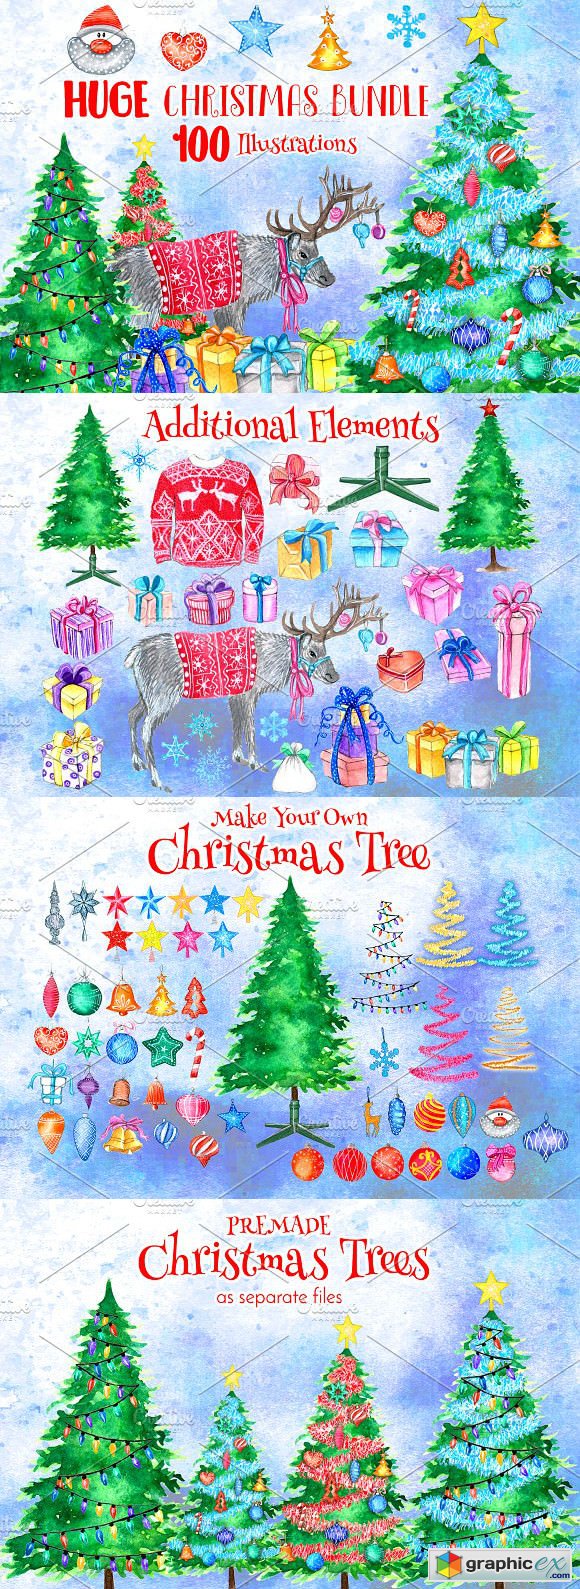 HUGE Christmas Watercolor Pack